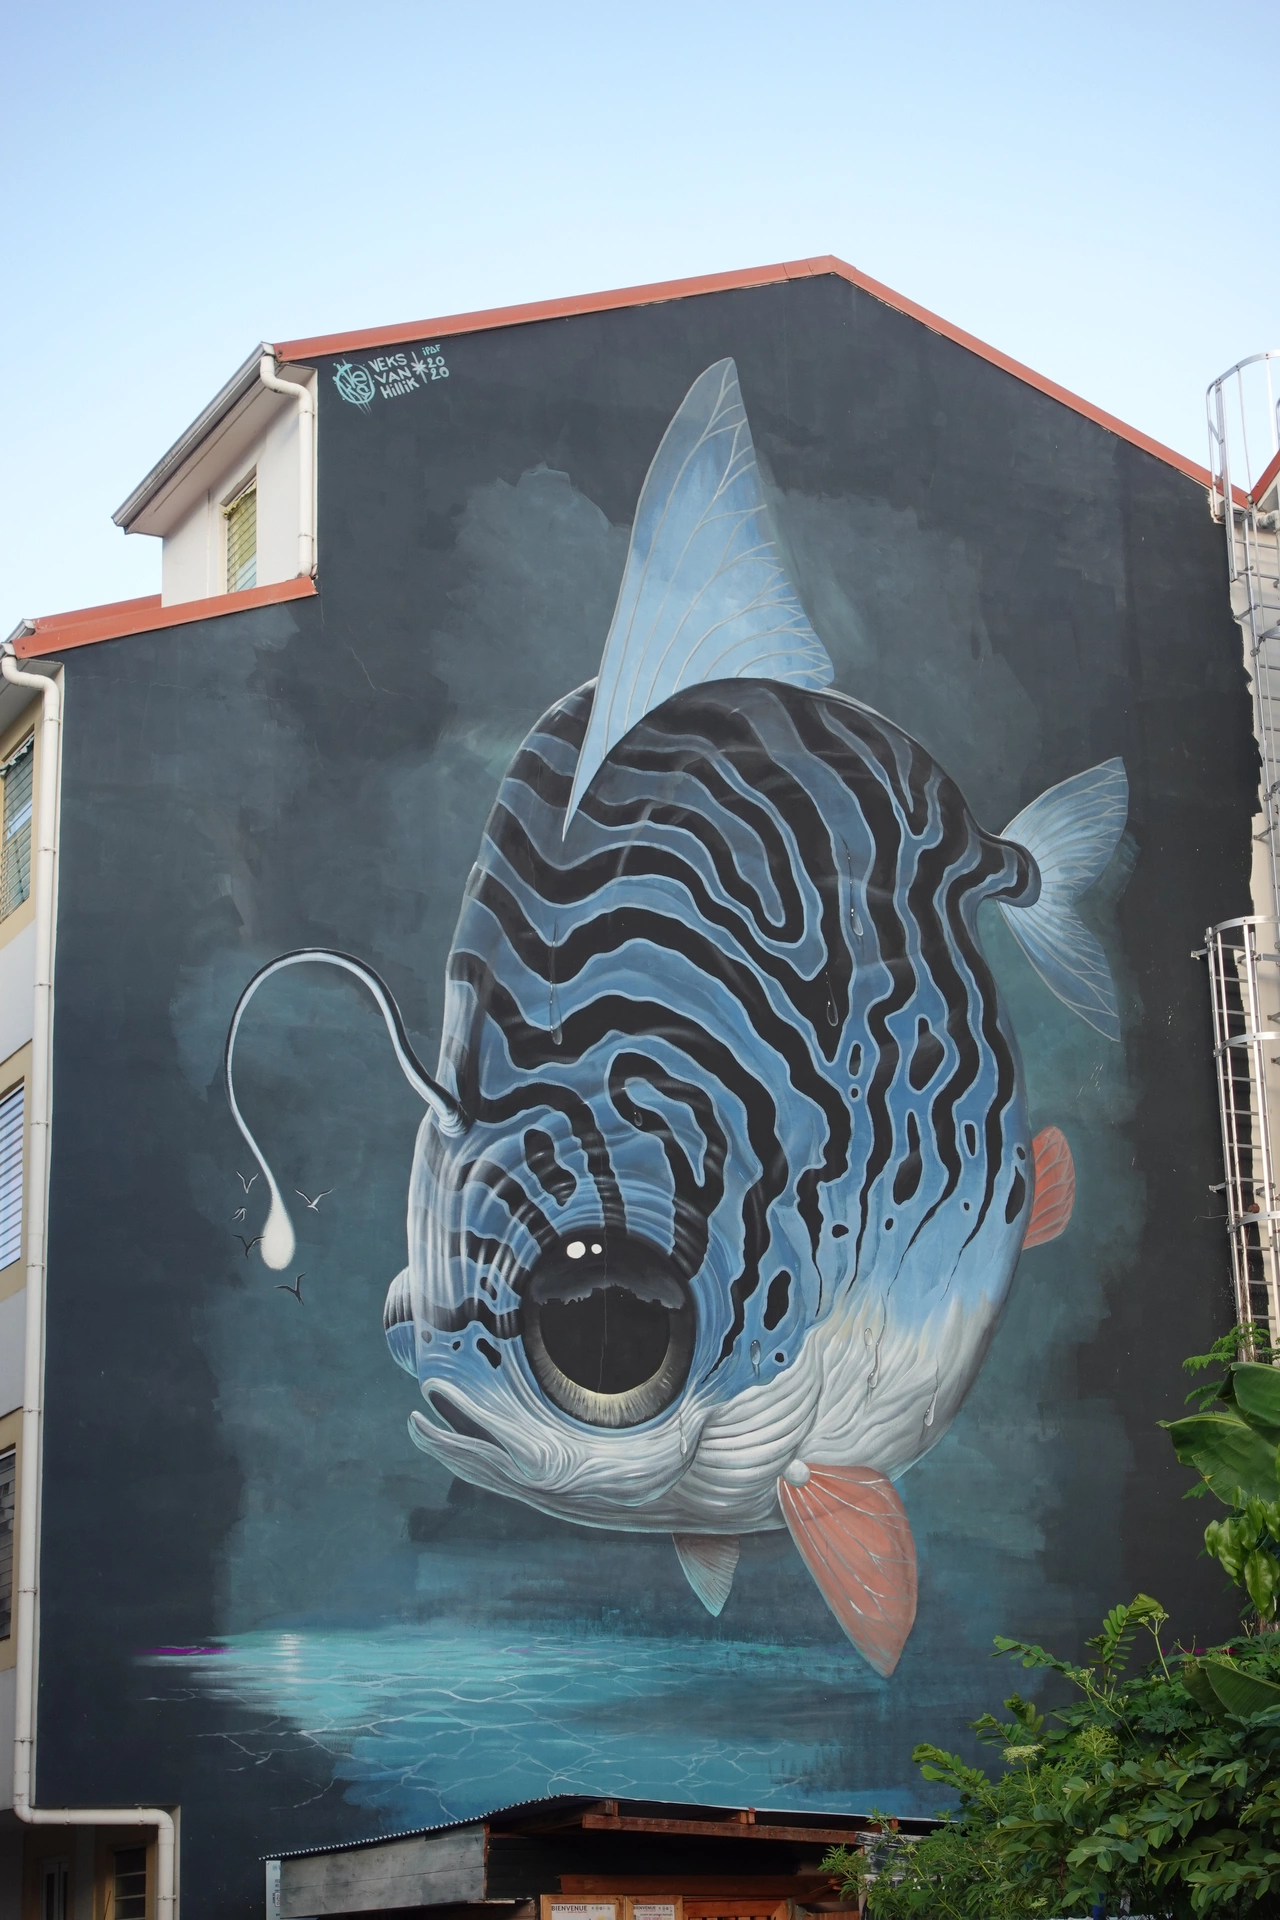 Oeuvre de Street Art réalisée par Veks van hillik à Fort-de-France